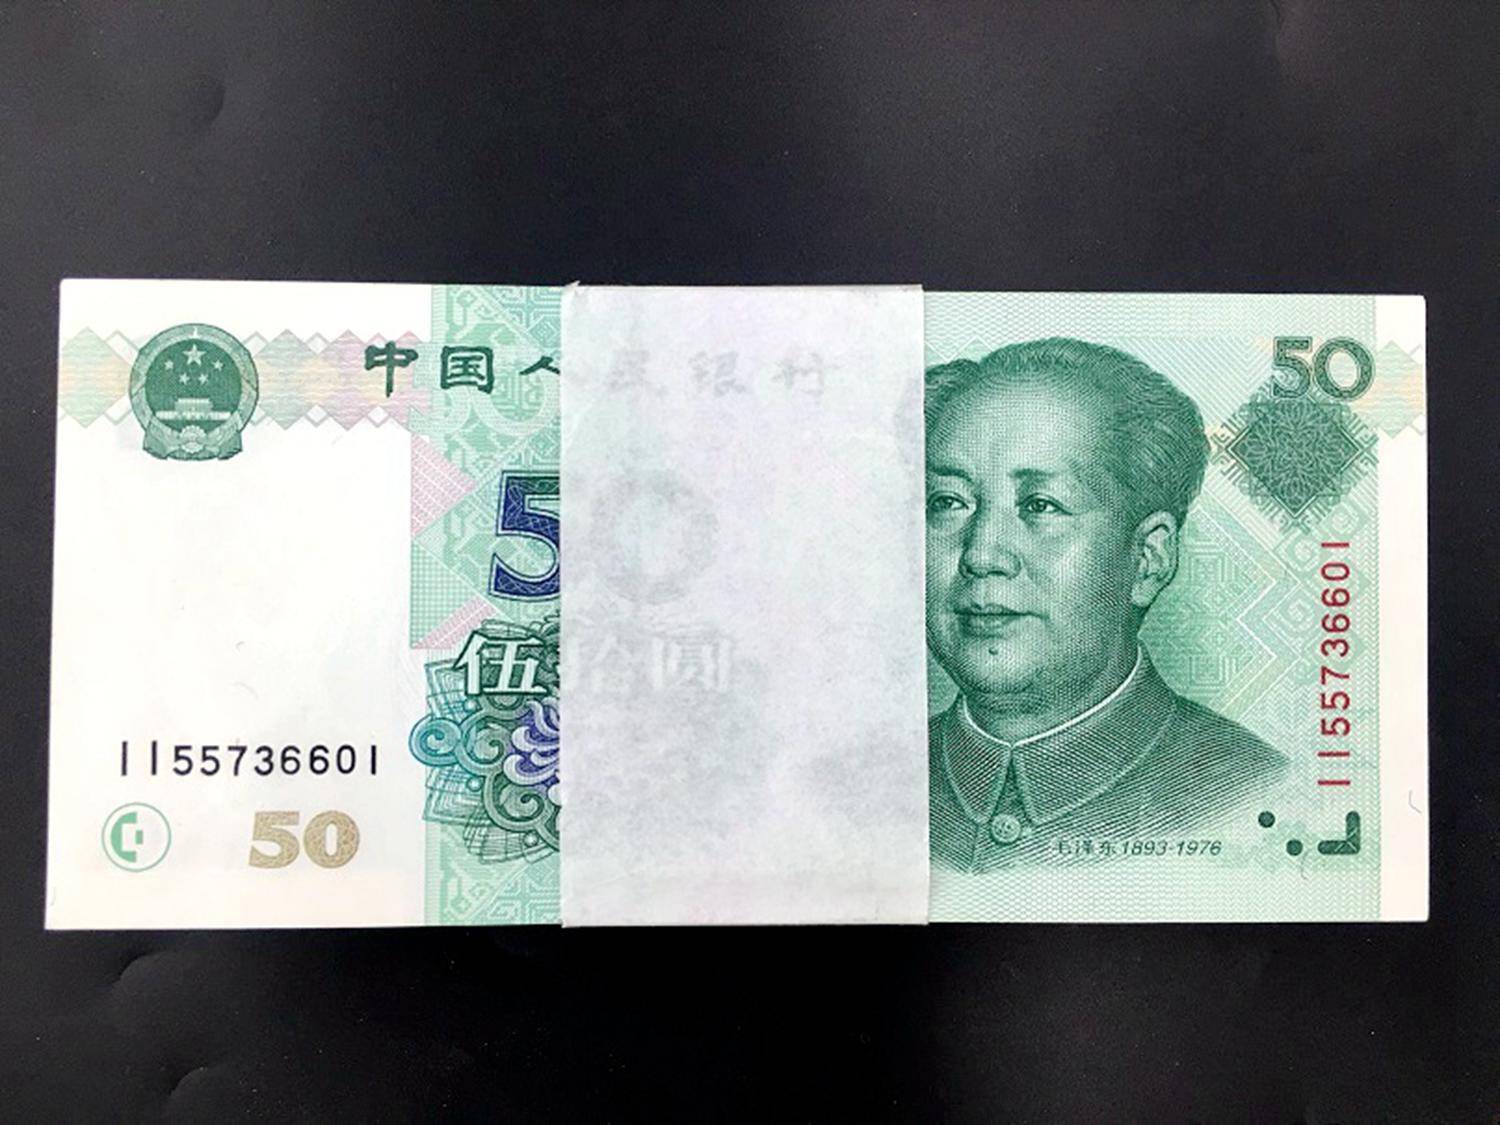 50元人民币图片表情包图片